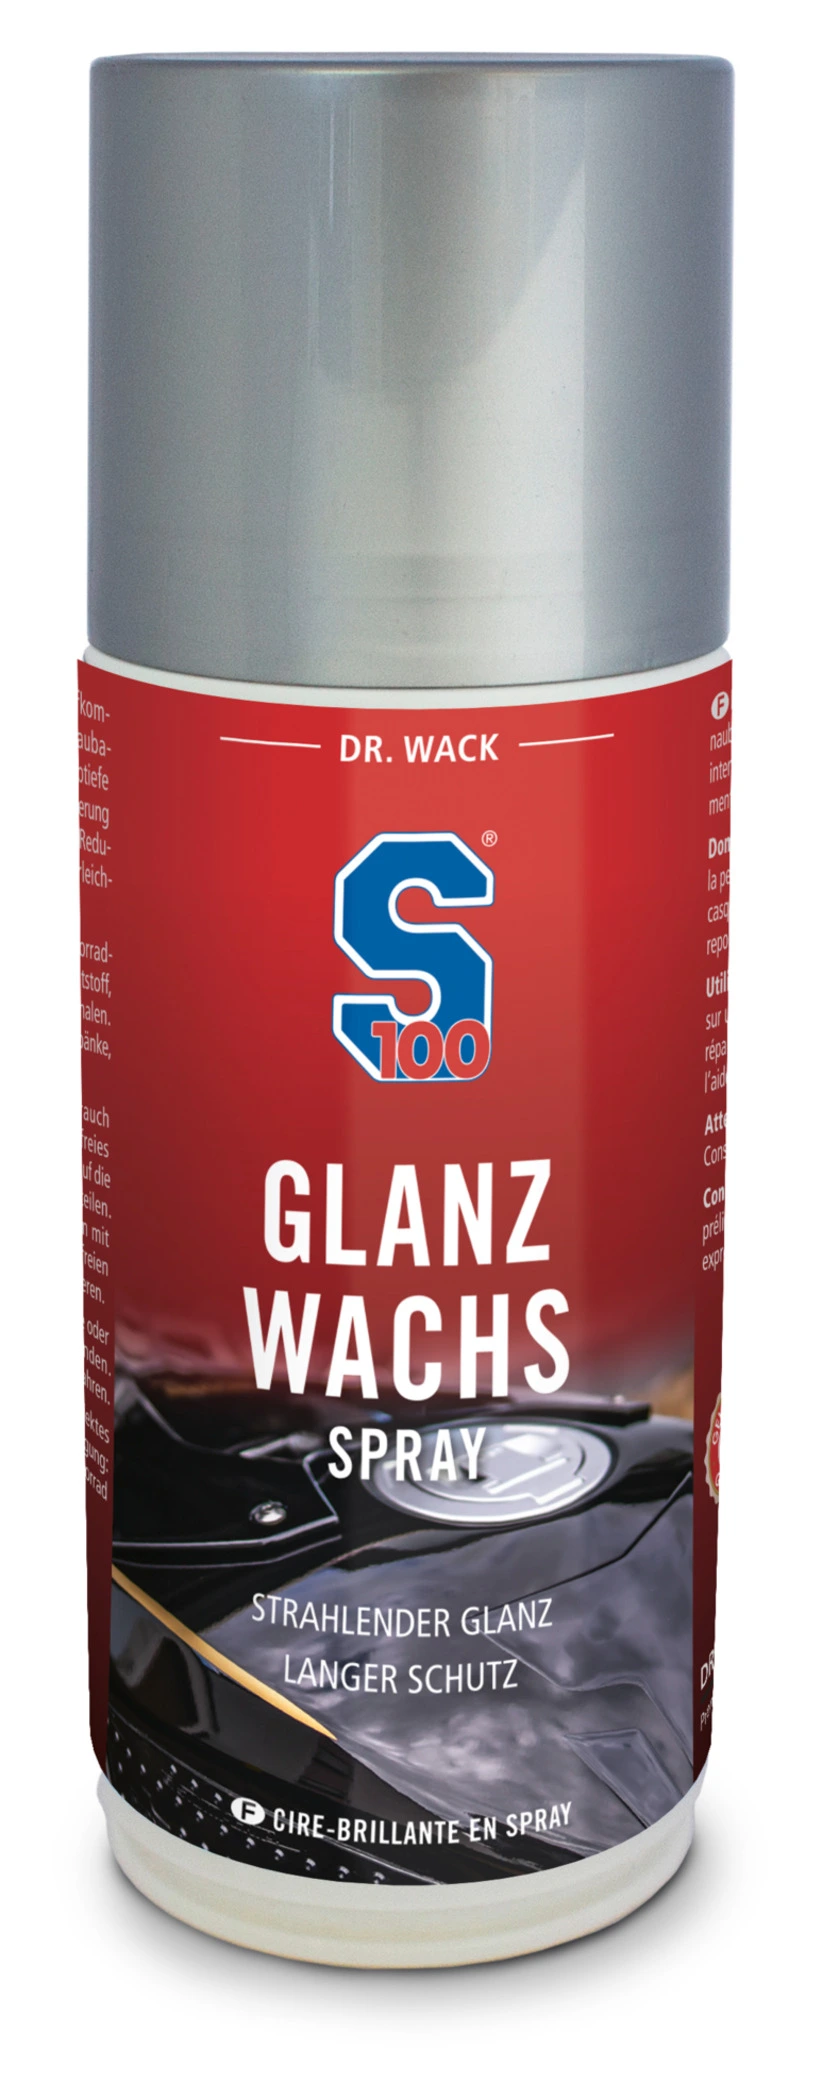 S100 GLANZ-WACHS-SPRAY